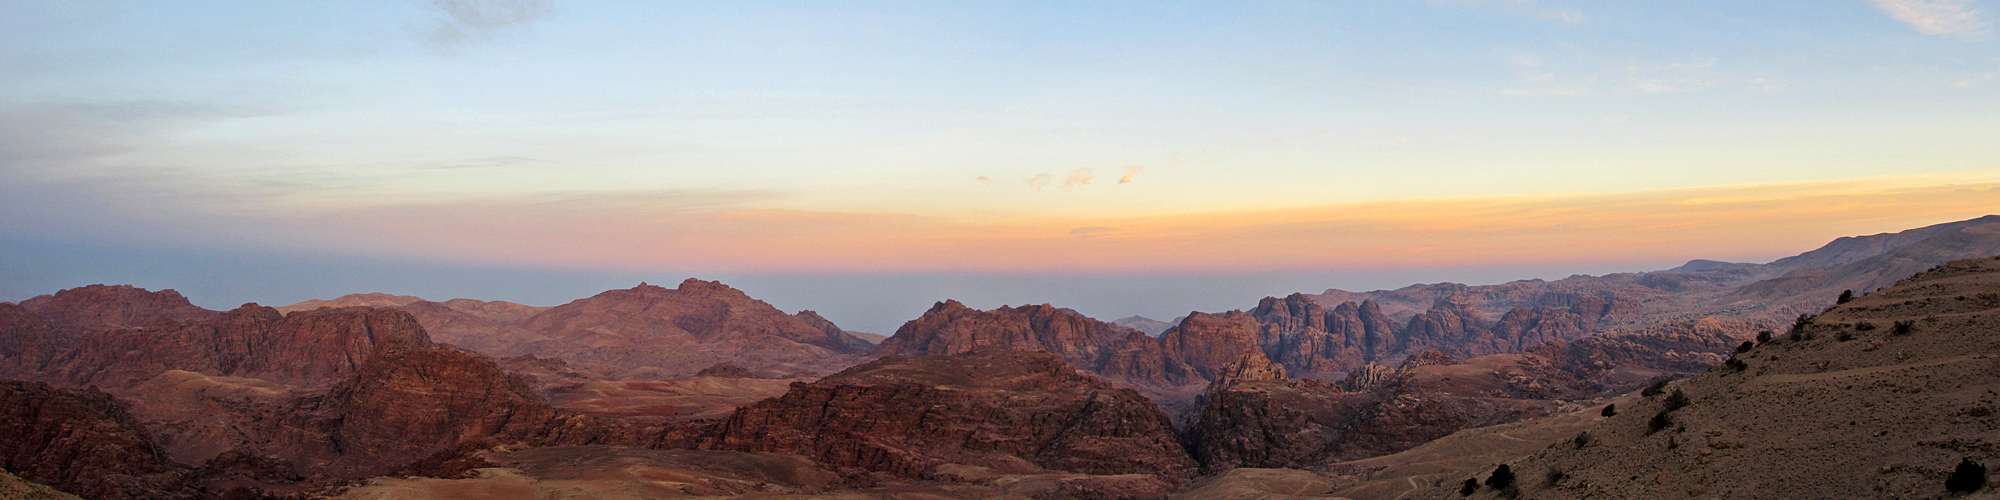 Blick auf die Berge rund um Petra